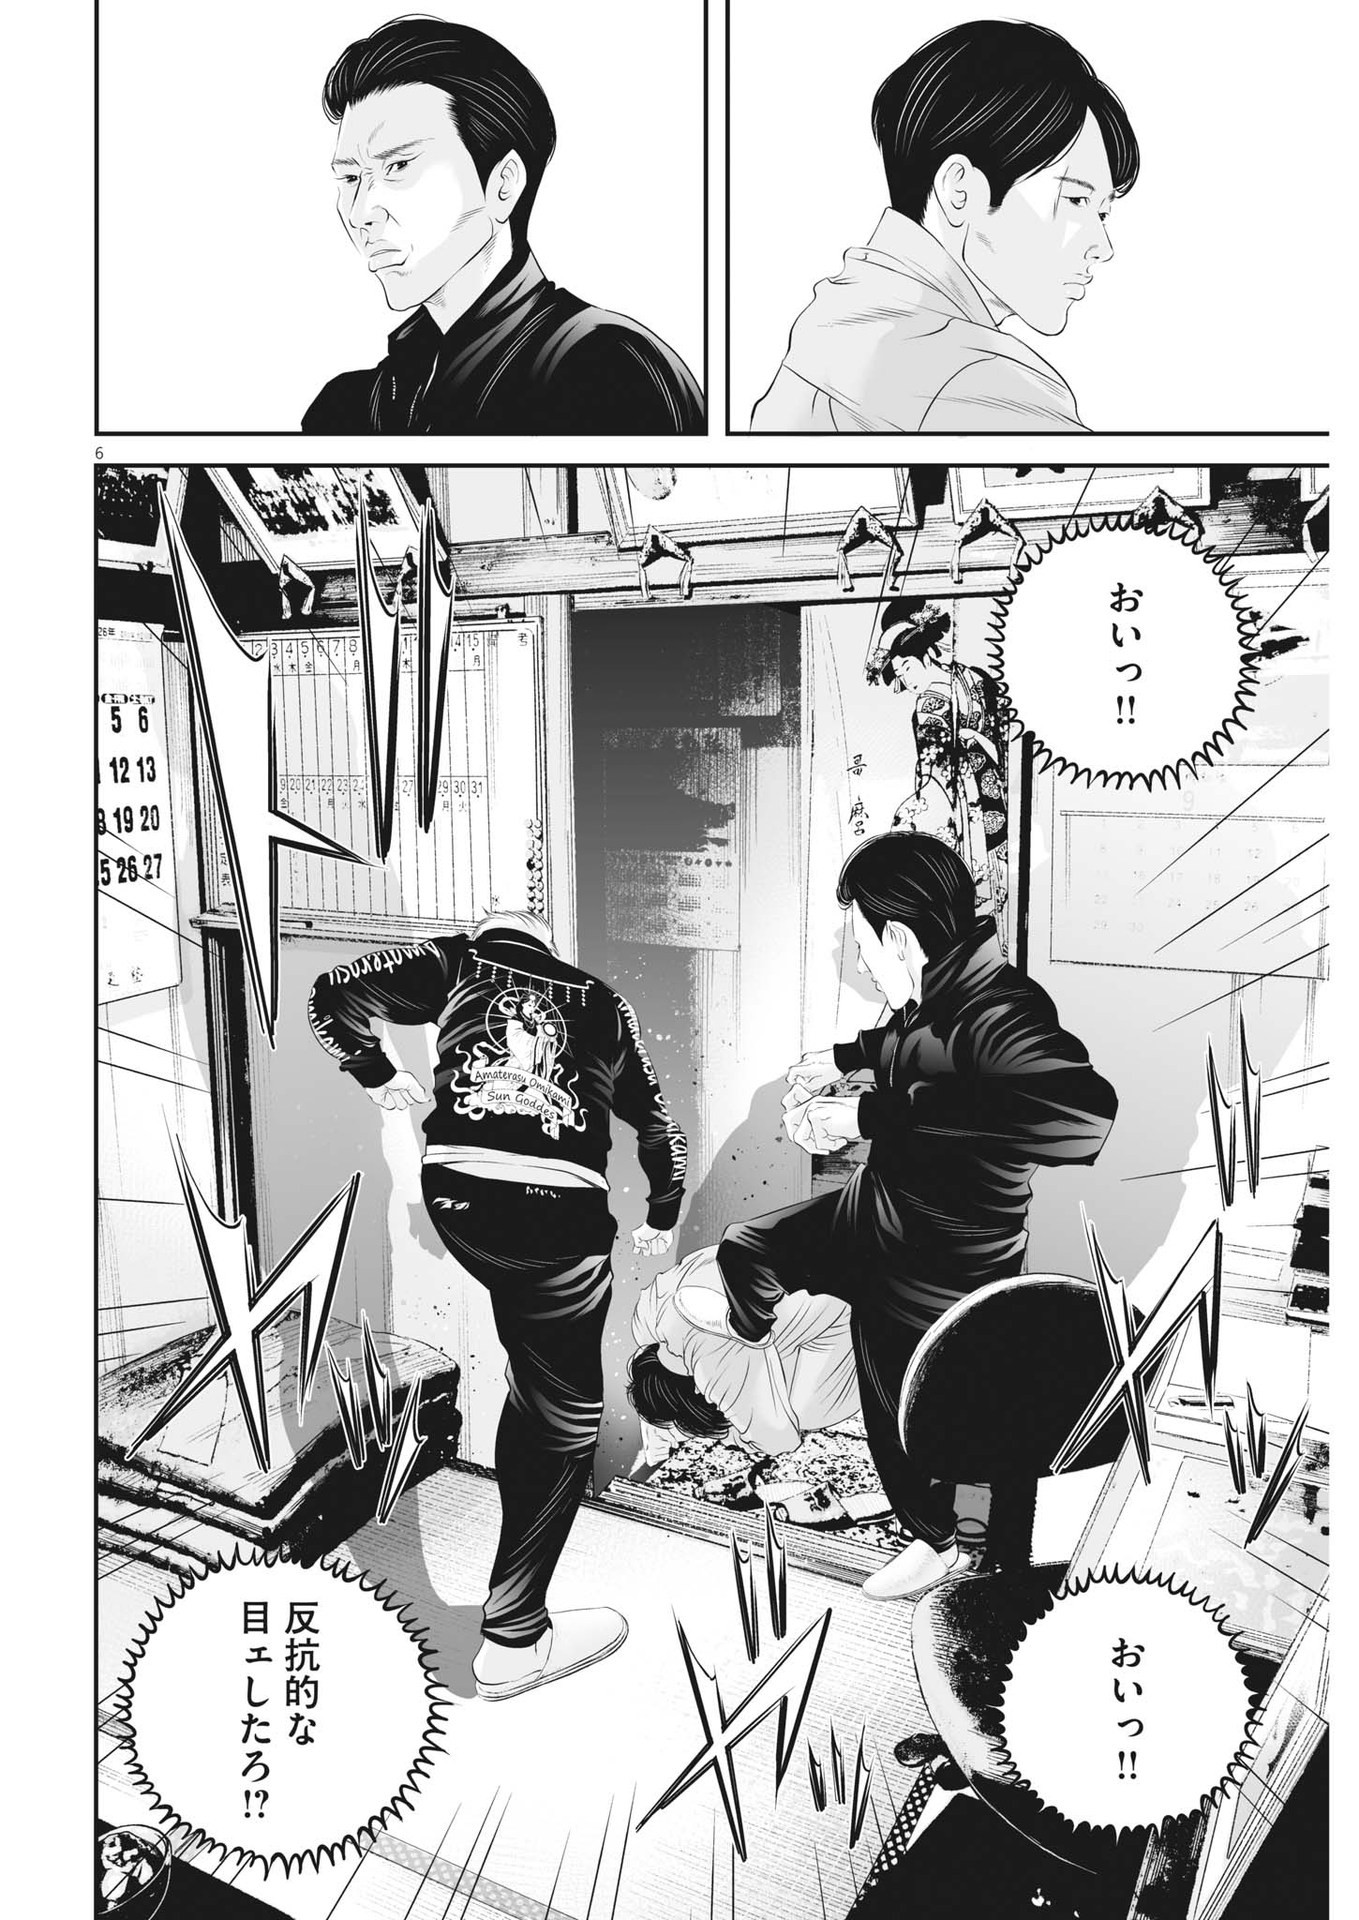 Kujou no Taizai - Chapter 95 - Page 6